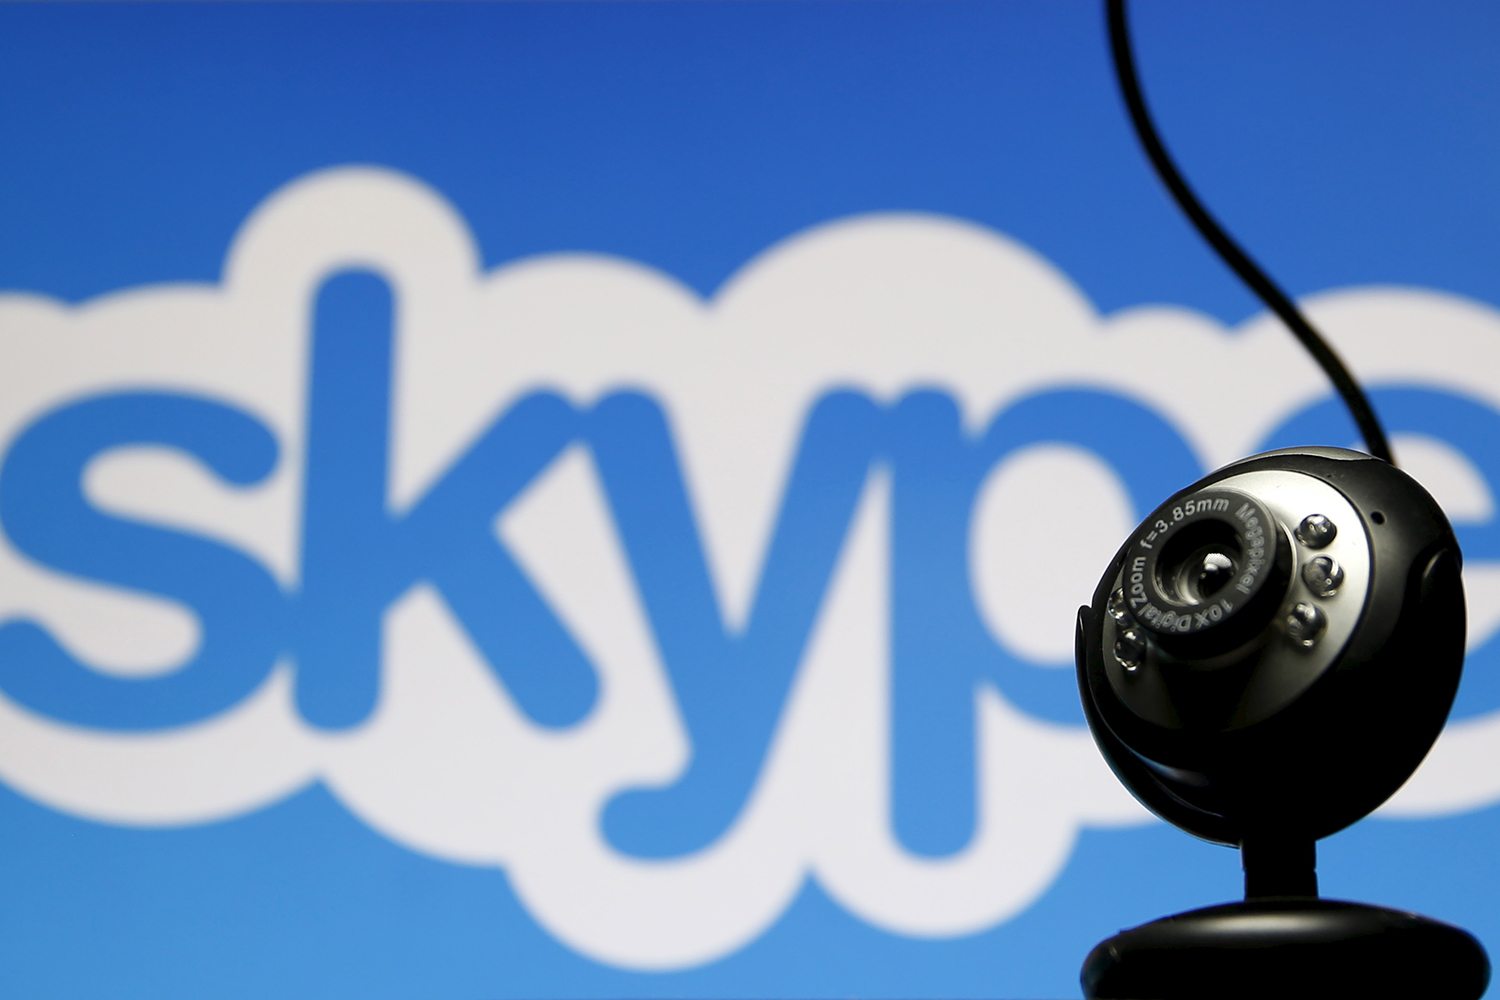 Skype te permite hablar con los alemanes sin saber su idioma